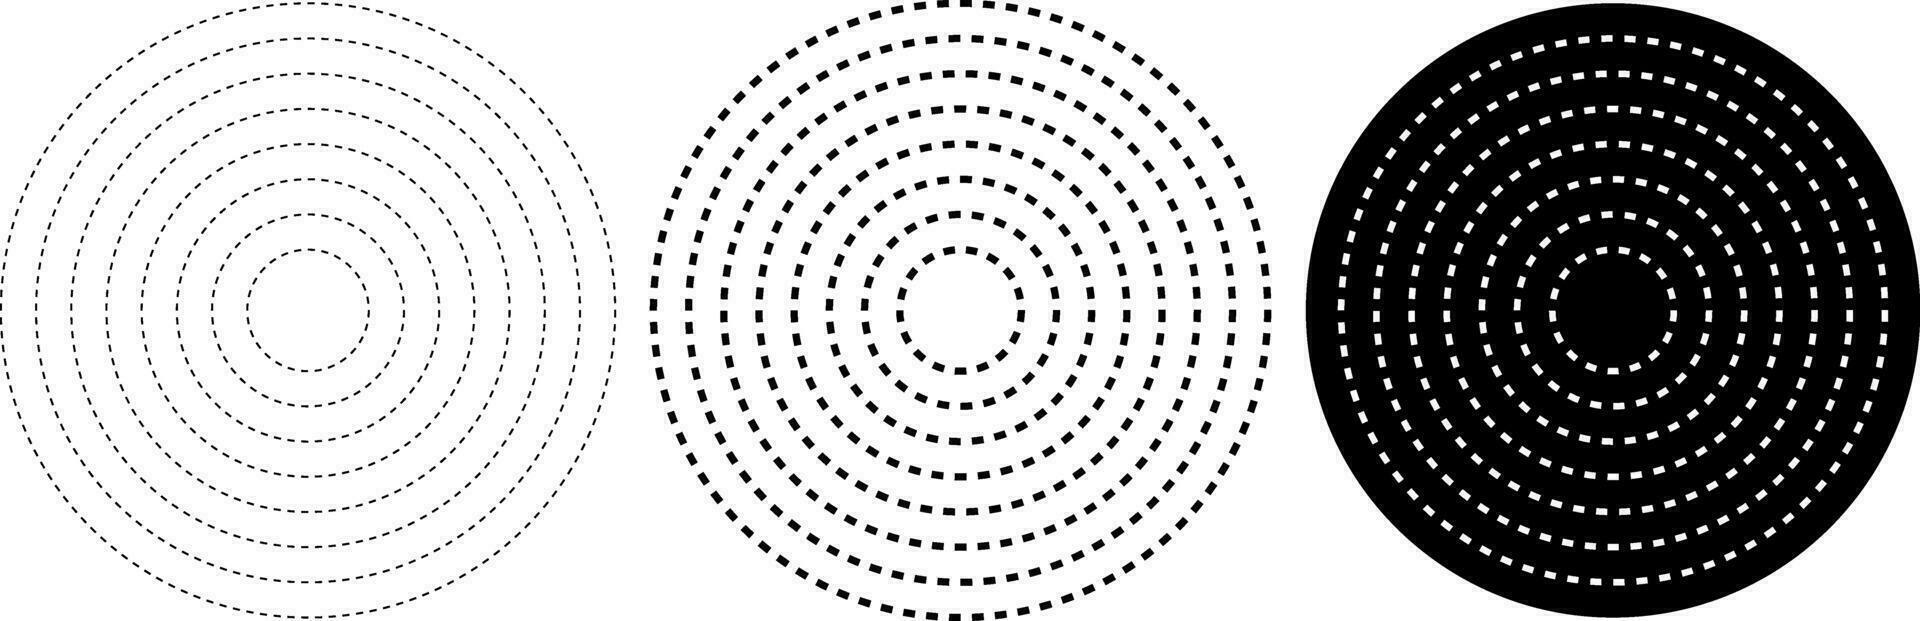 trama de semitonos guión circulo elemento. radial, radiante guión líneas. circular, concéntrico círculos vector